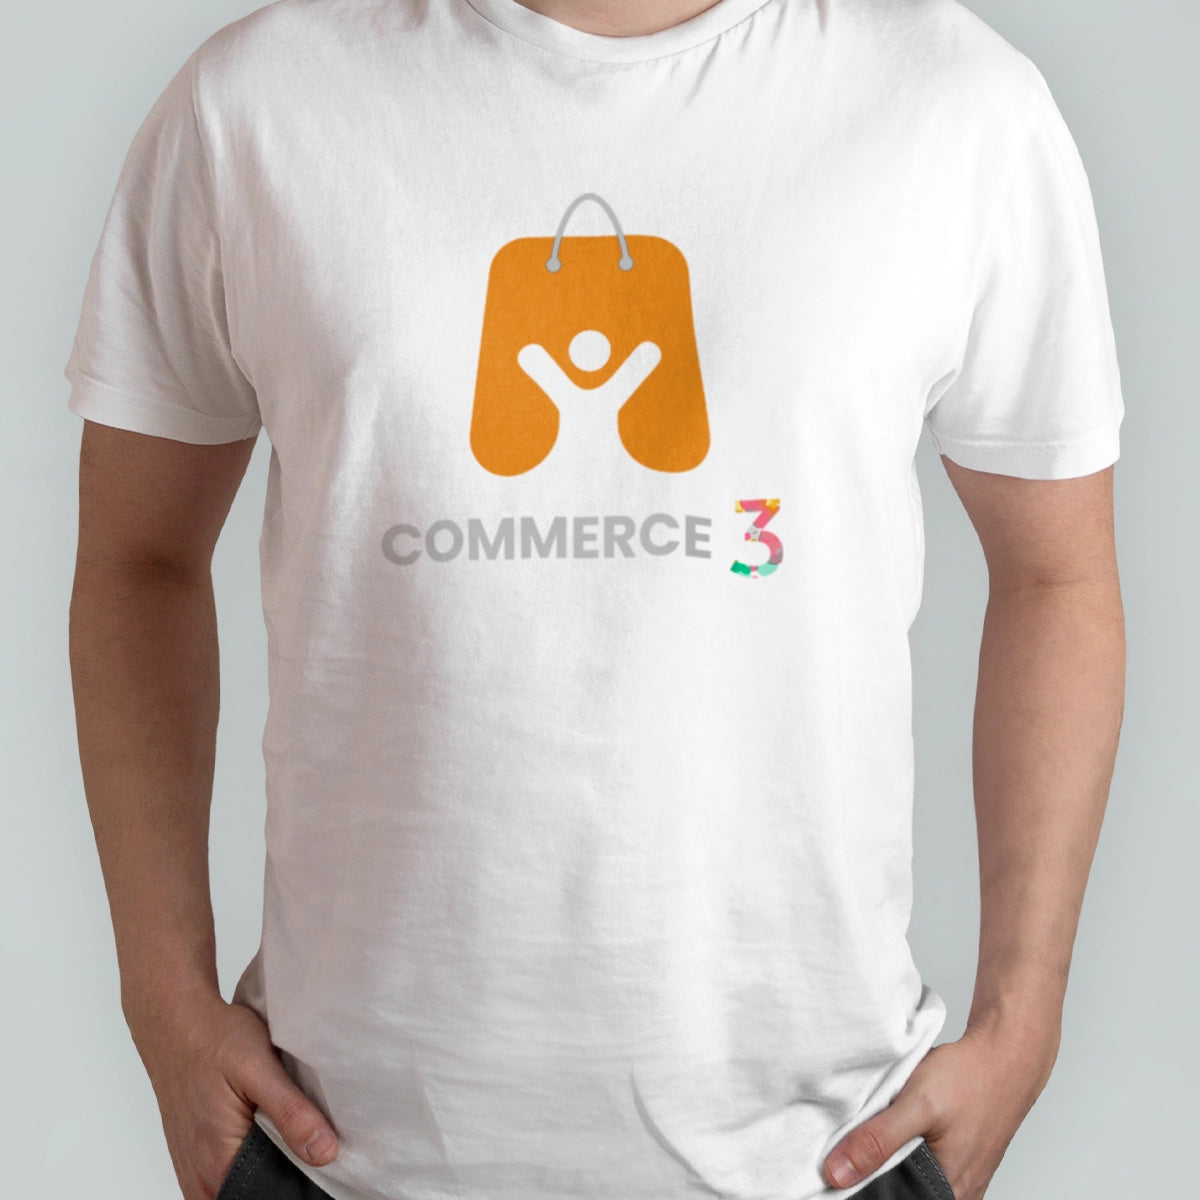 commerce3.com